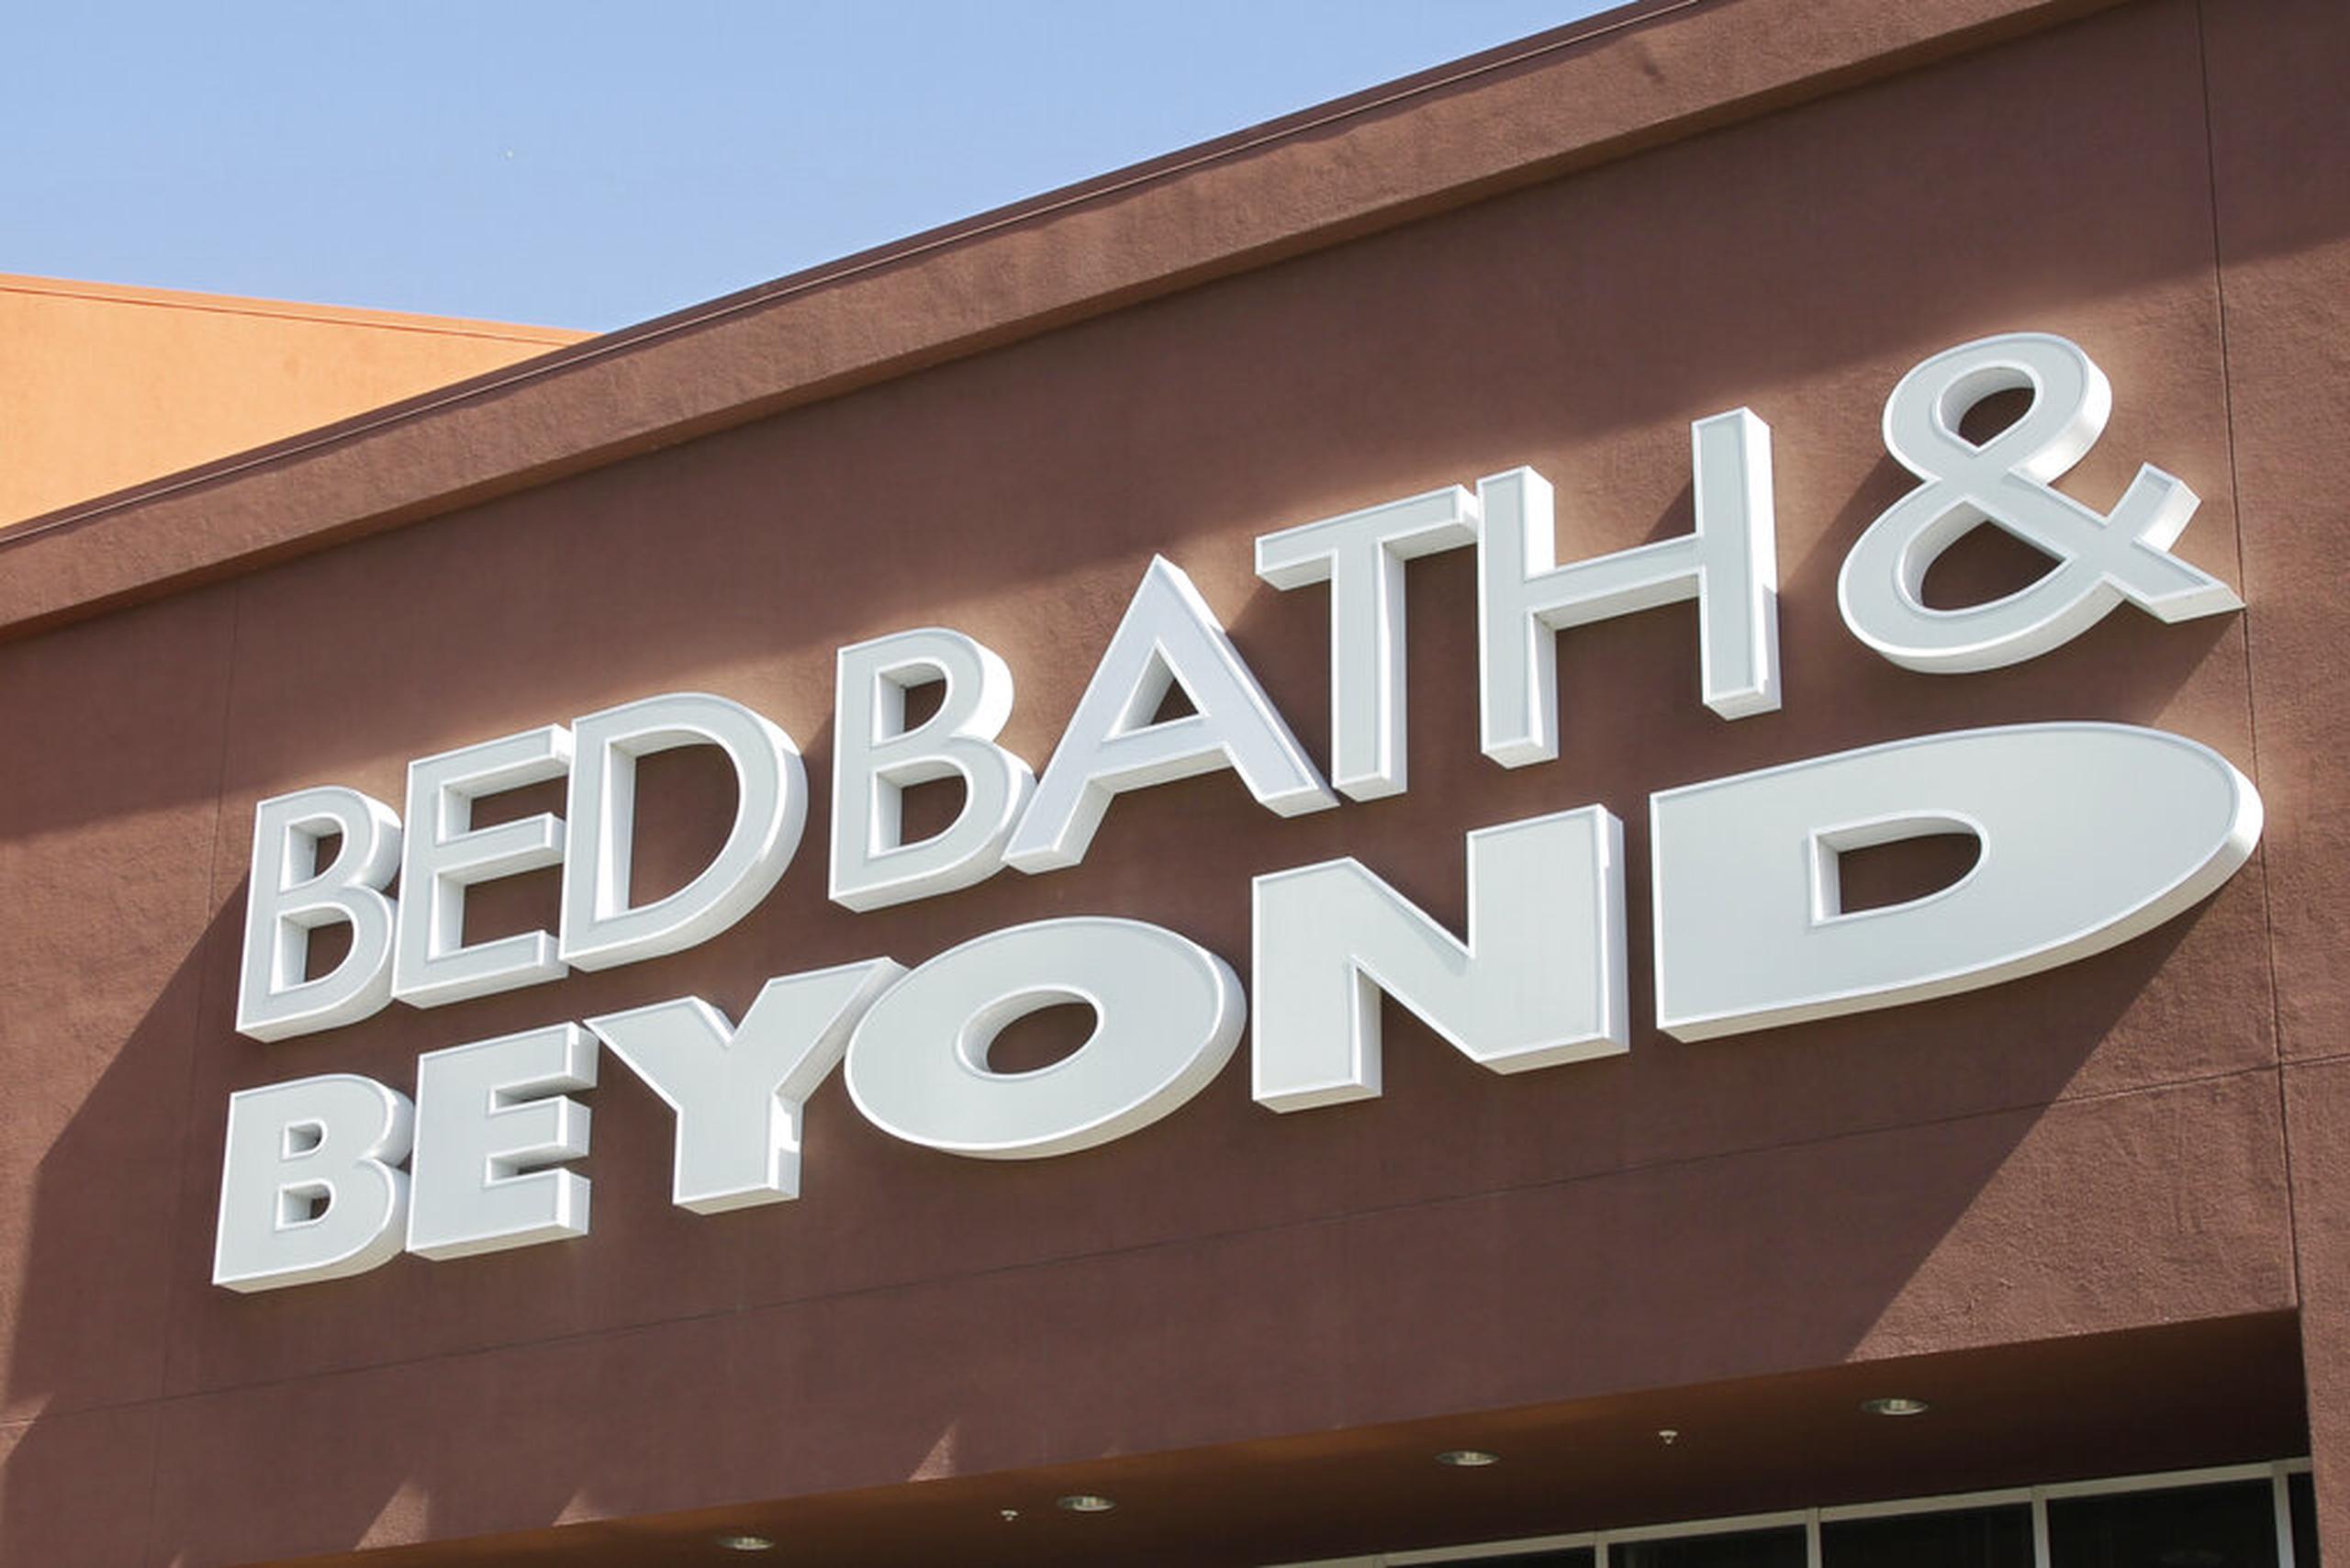 Bed Bath & Beyond planea reducir rápidamente sus gastos con una reducción de aproximadamente un 20% de su plantilla, que en 2020 era de unos 55,000 empleados.